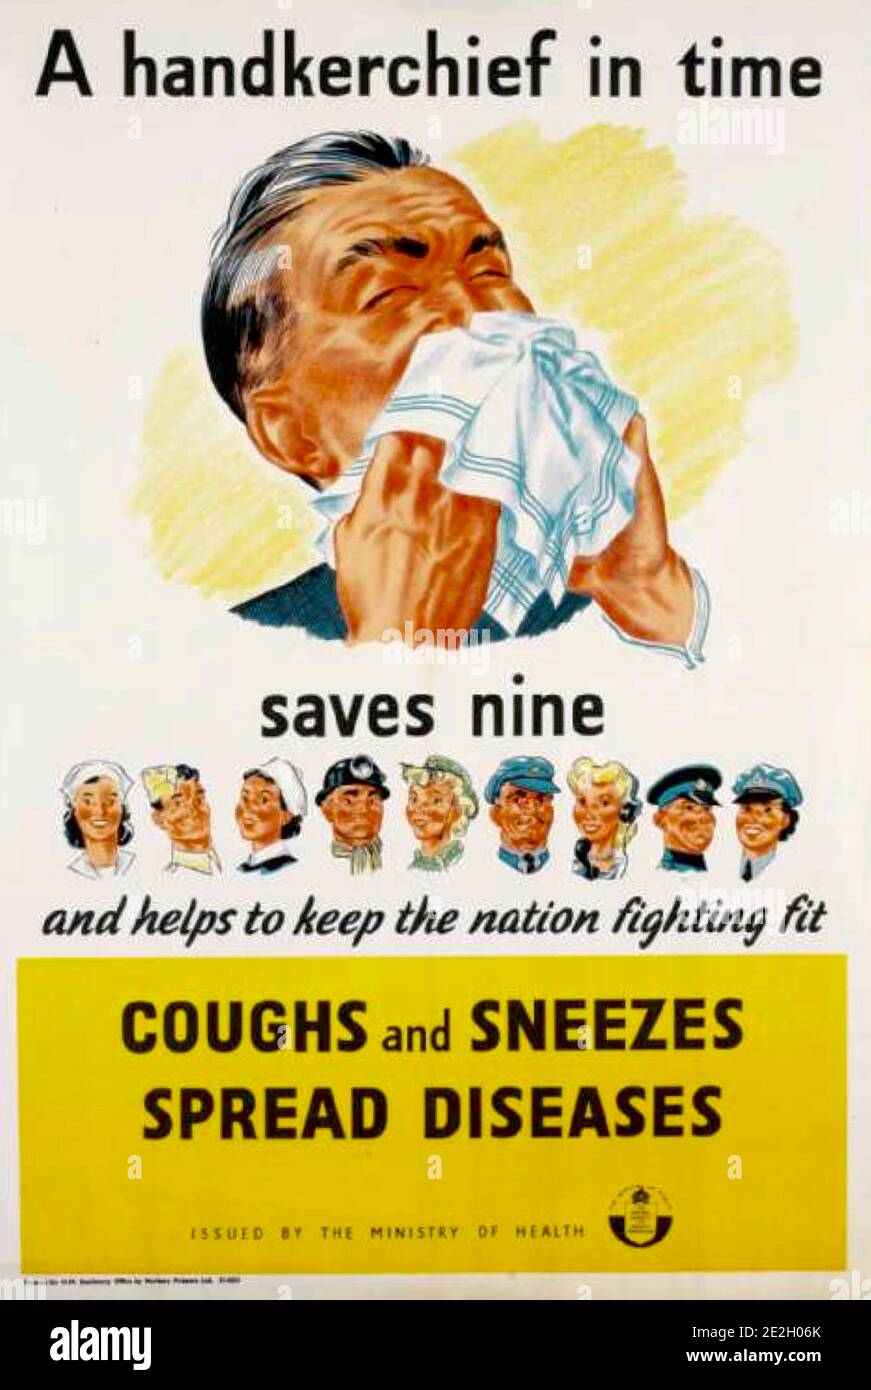 Husten und Niesen verbreiten Krankheiten vielleicht eine passende Botschaft in der heutigen Coronavirus-covid Krise. Nicht mehr Taschentuch, sondern eine Gesichtsmaske viel wahrscheinlicher. Stockfoto